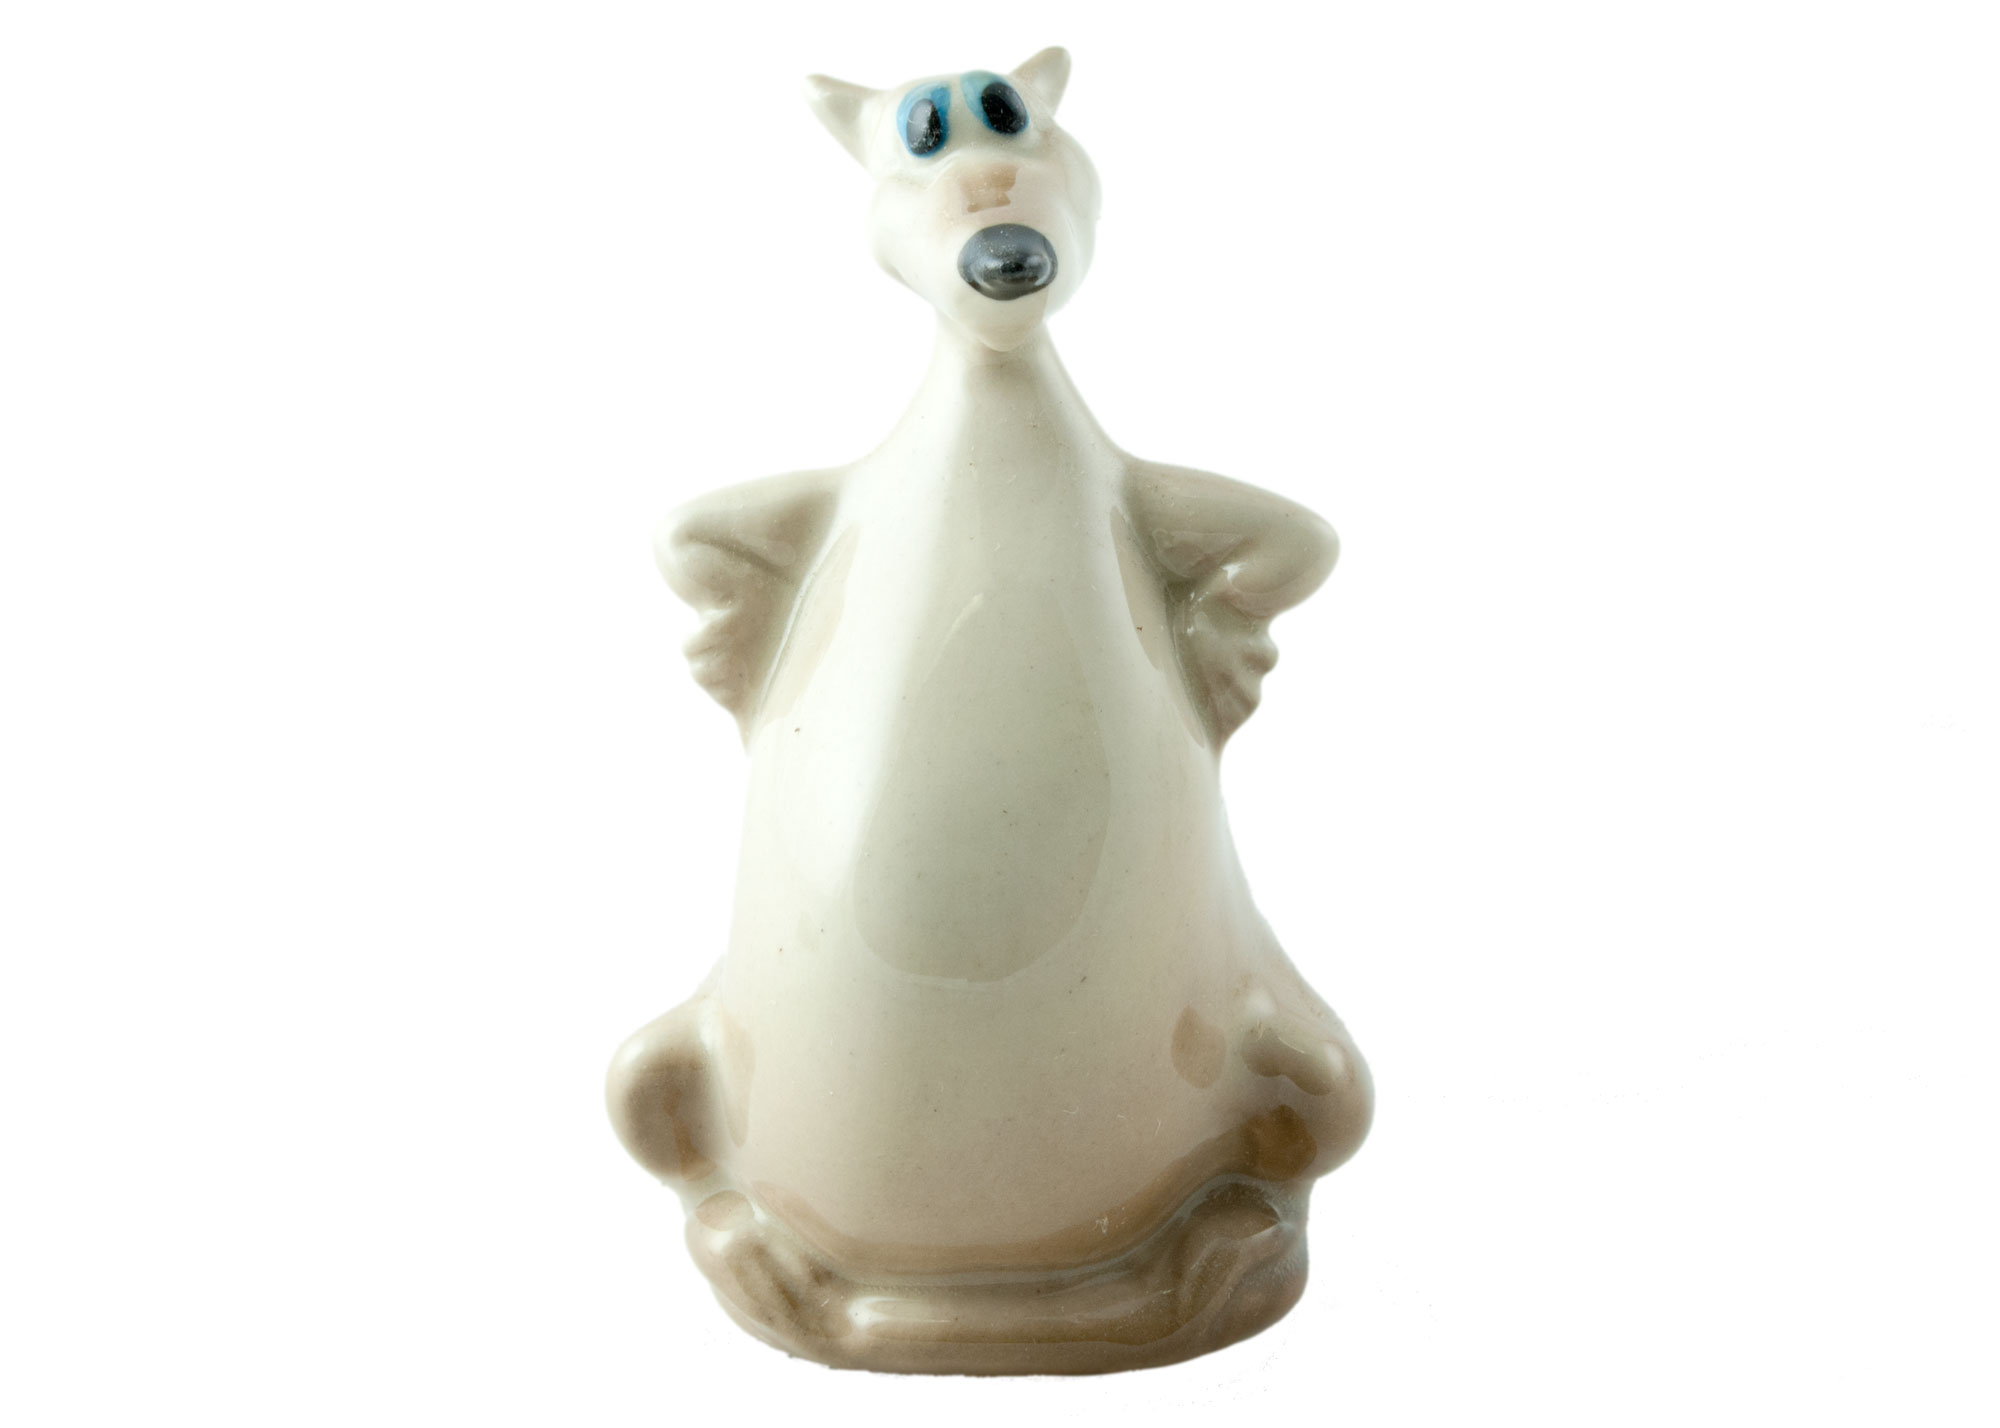 Buy Rat Porcelain Figurine at GoldenCockerel.com